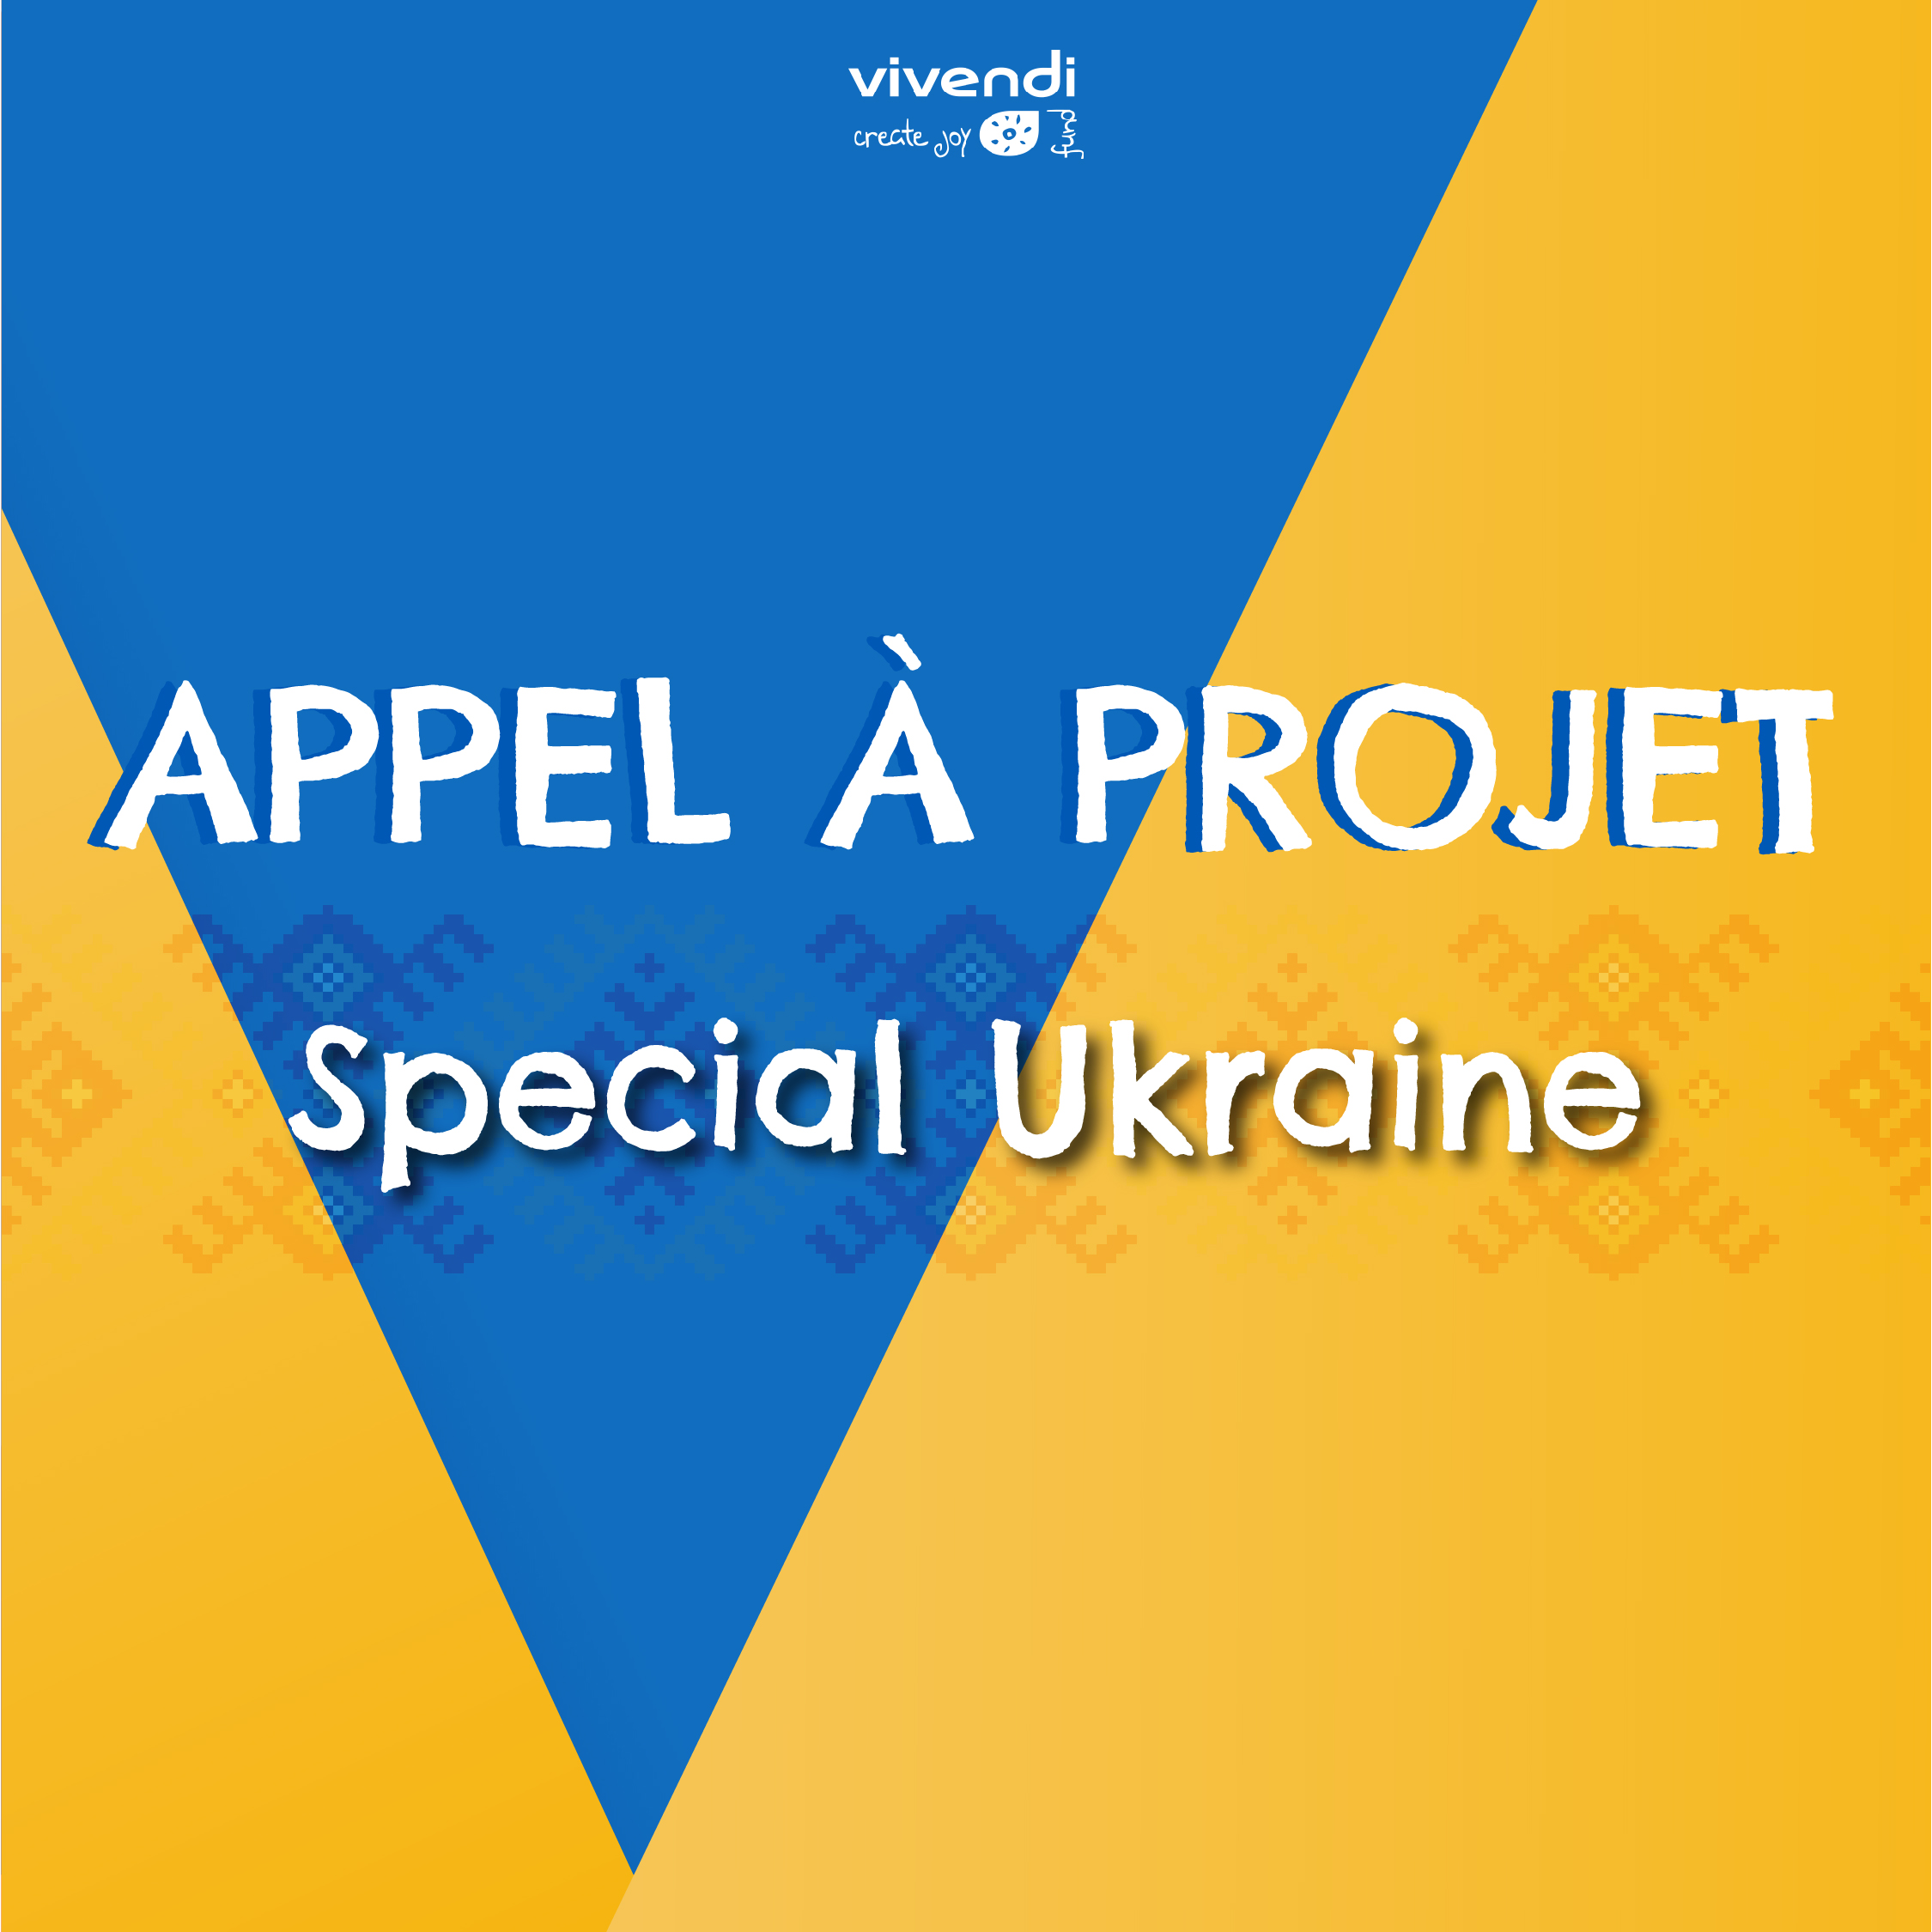 Appel à projets de Vivendi Create Joy spécial Ukraine